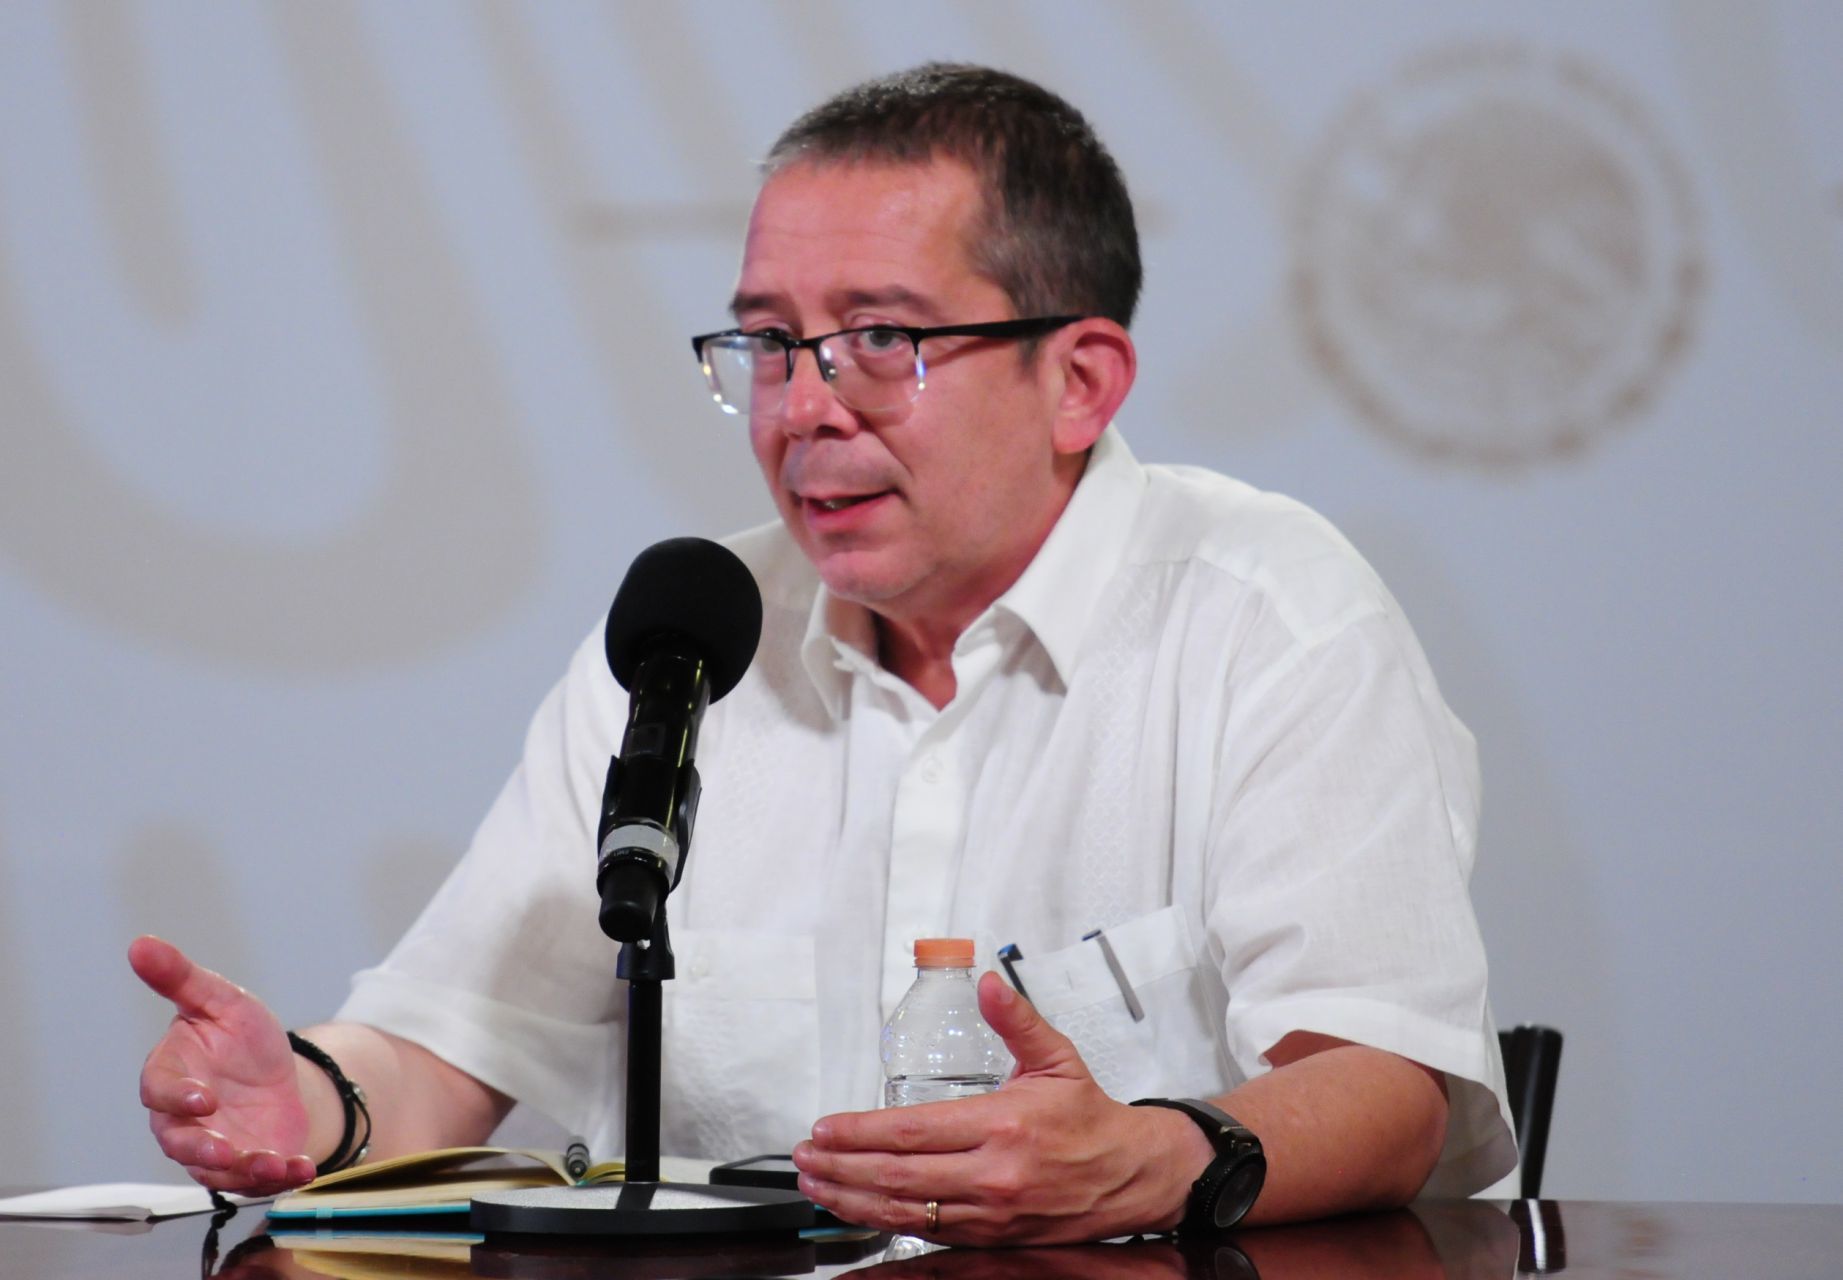 Jenaro Villamil tundió a Ernesto Zedillo por crítica a gobernantes latinoamericanos: “El campeón de la empatía”